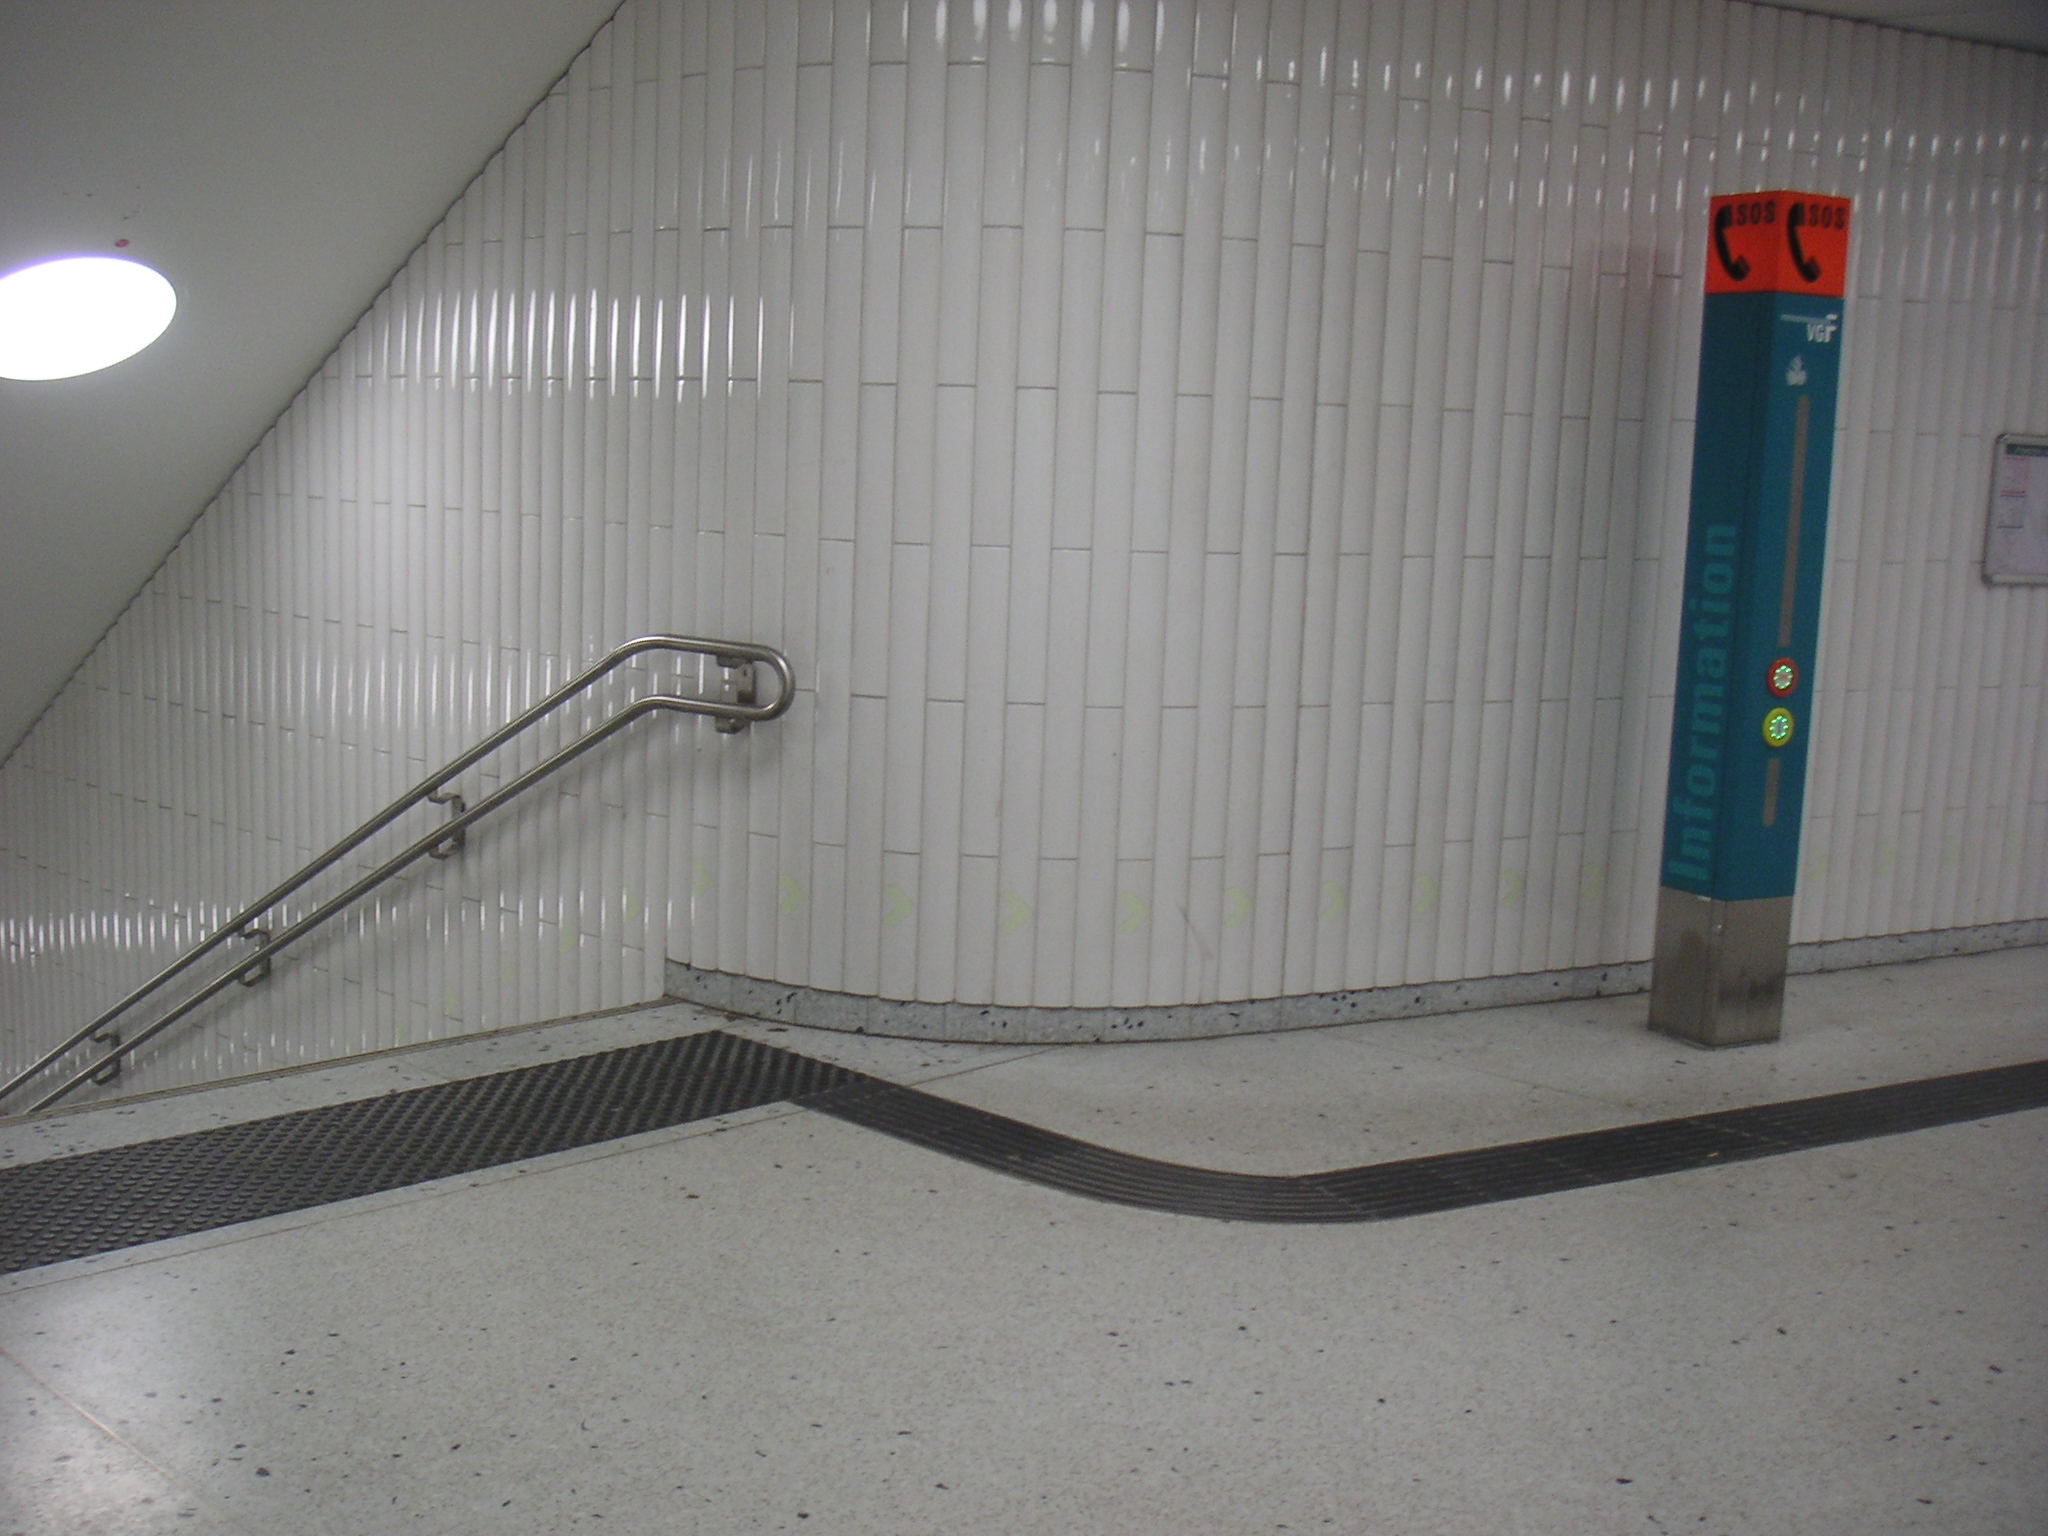 Treppenanlage U-Bahn Frankfurt. Das Noppenfeld warnt vor der Treppe, der Leitstreifen führt zum Handlauf, der an den Enden 30 cm waagerecht läuft.